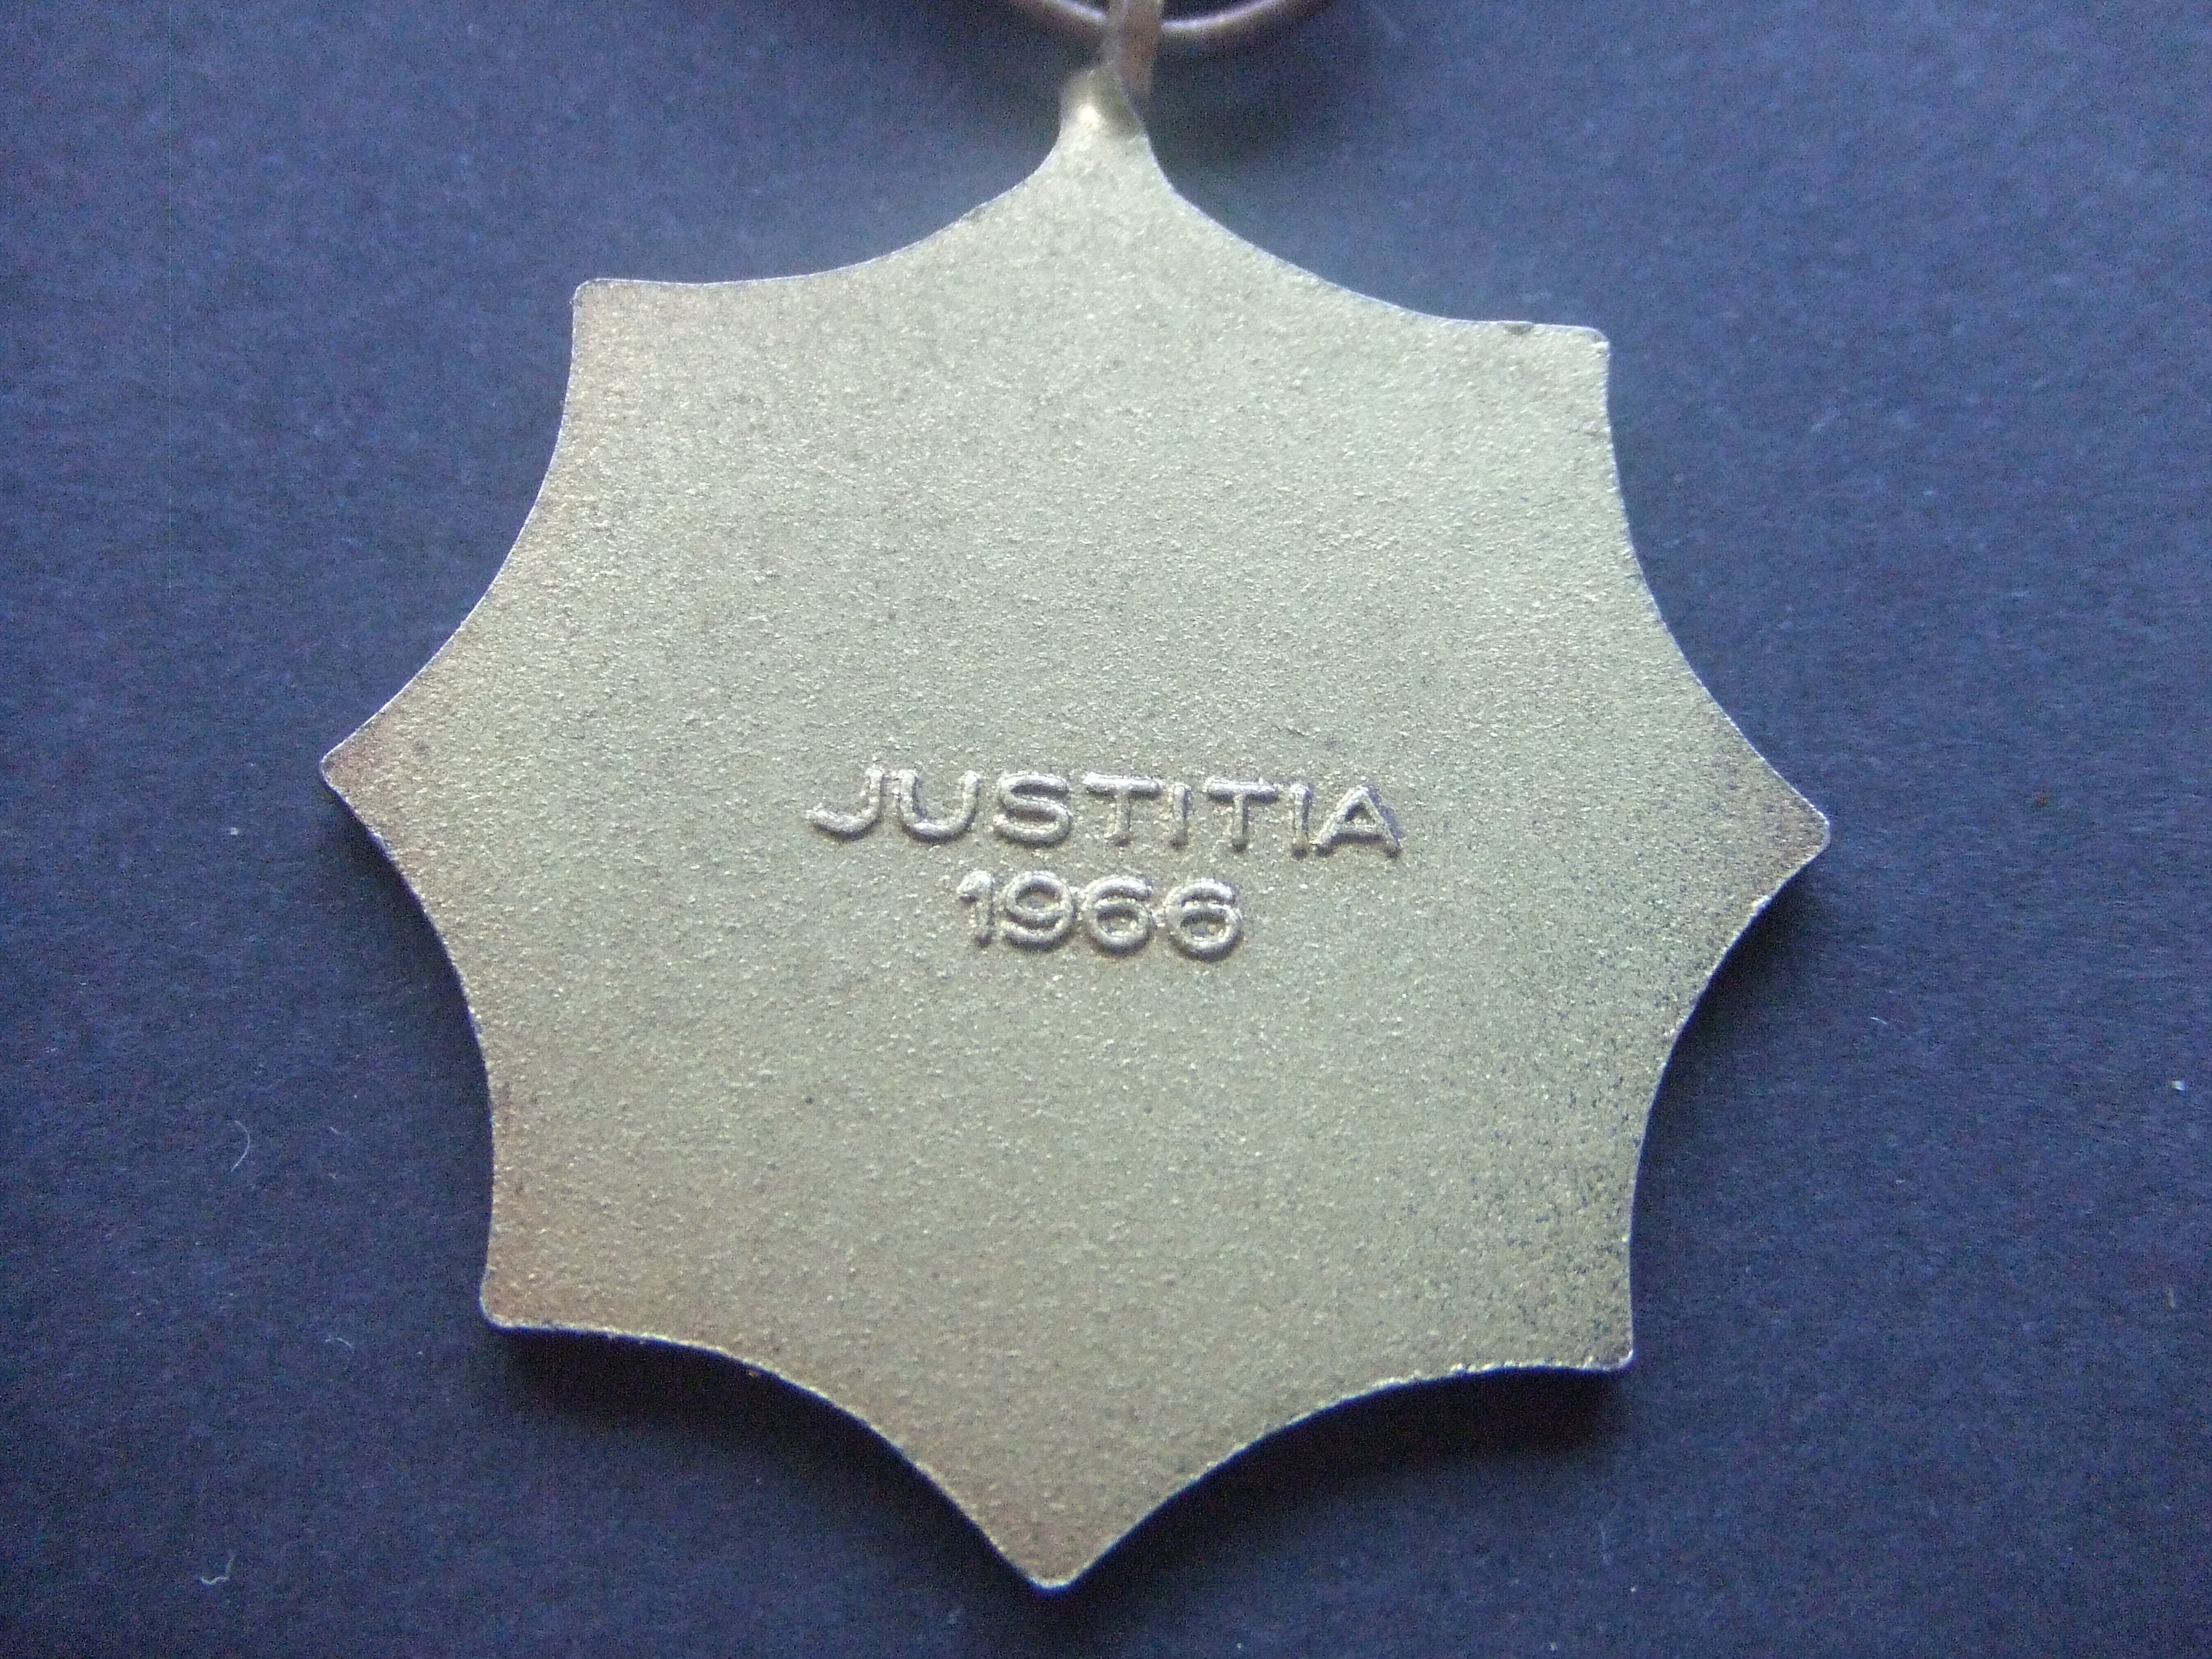 Justitia 1966 (2)